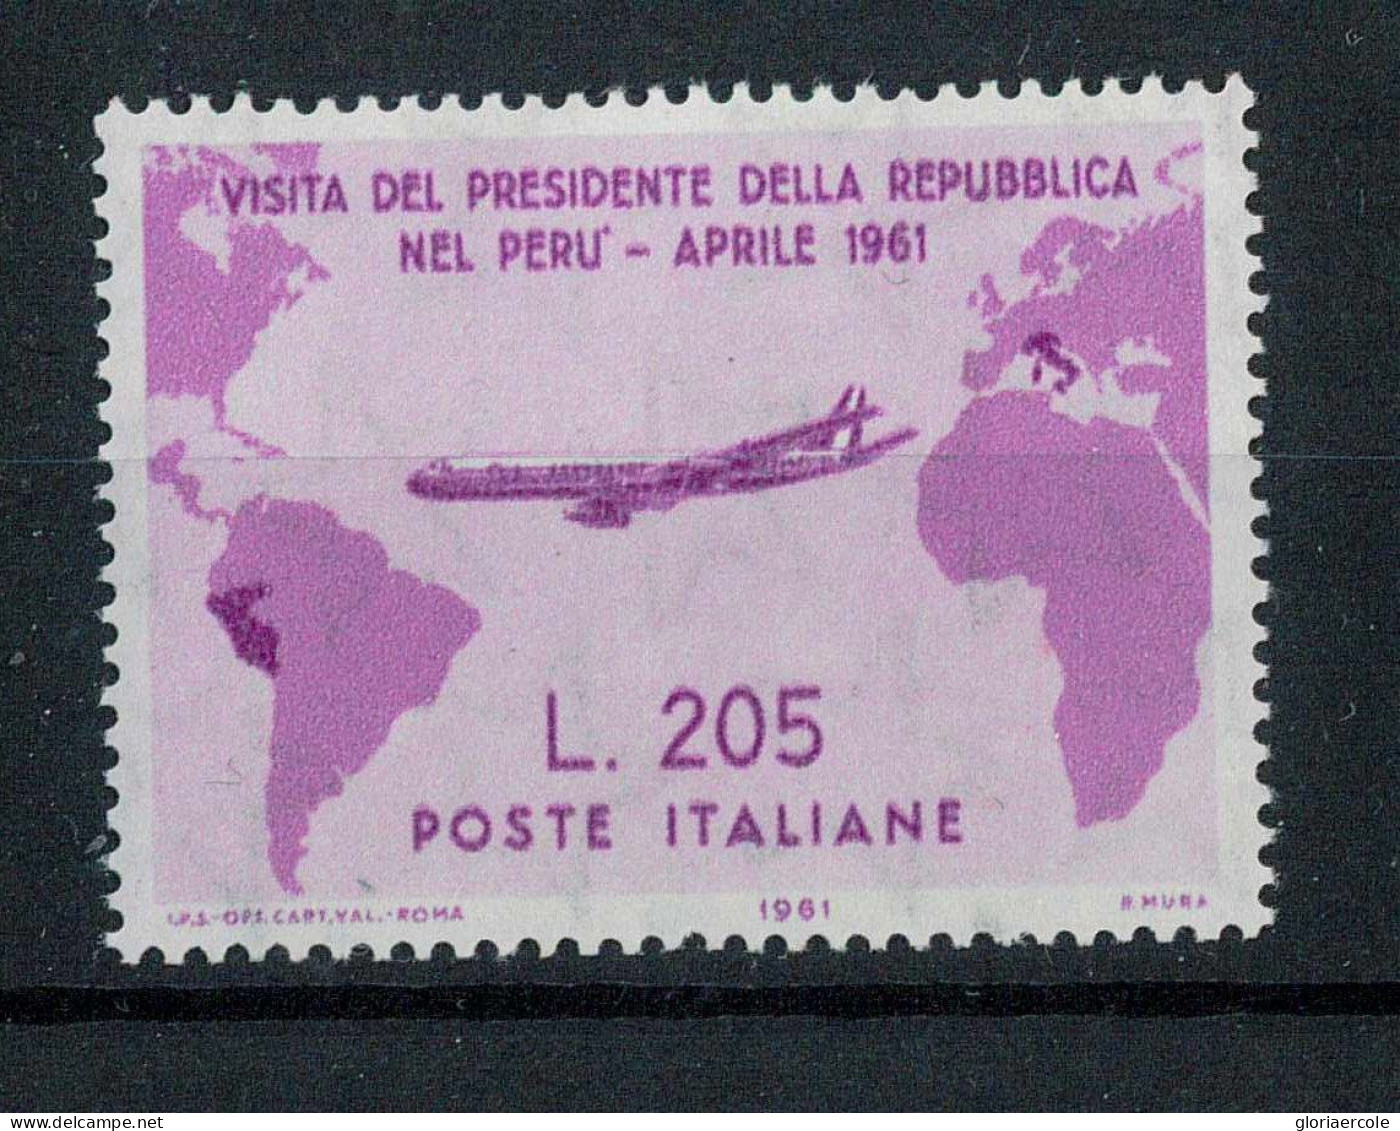 P2717 - REPUBBLICA ITALIANA , GRONCHI ROSA 1961, BELLISSIMO FRANCOBOLLO NUOVO, CERTIFICFDATO CILIO. - Sicile